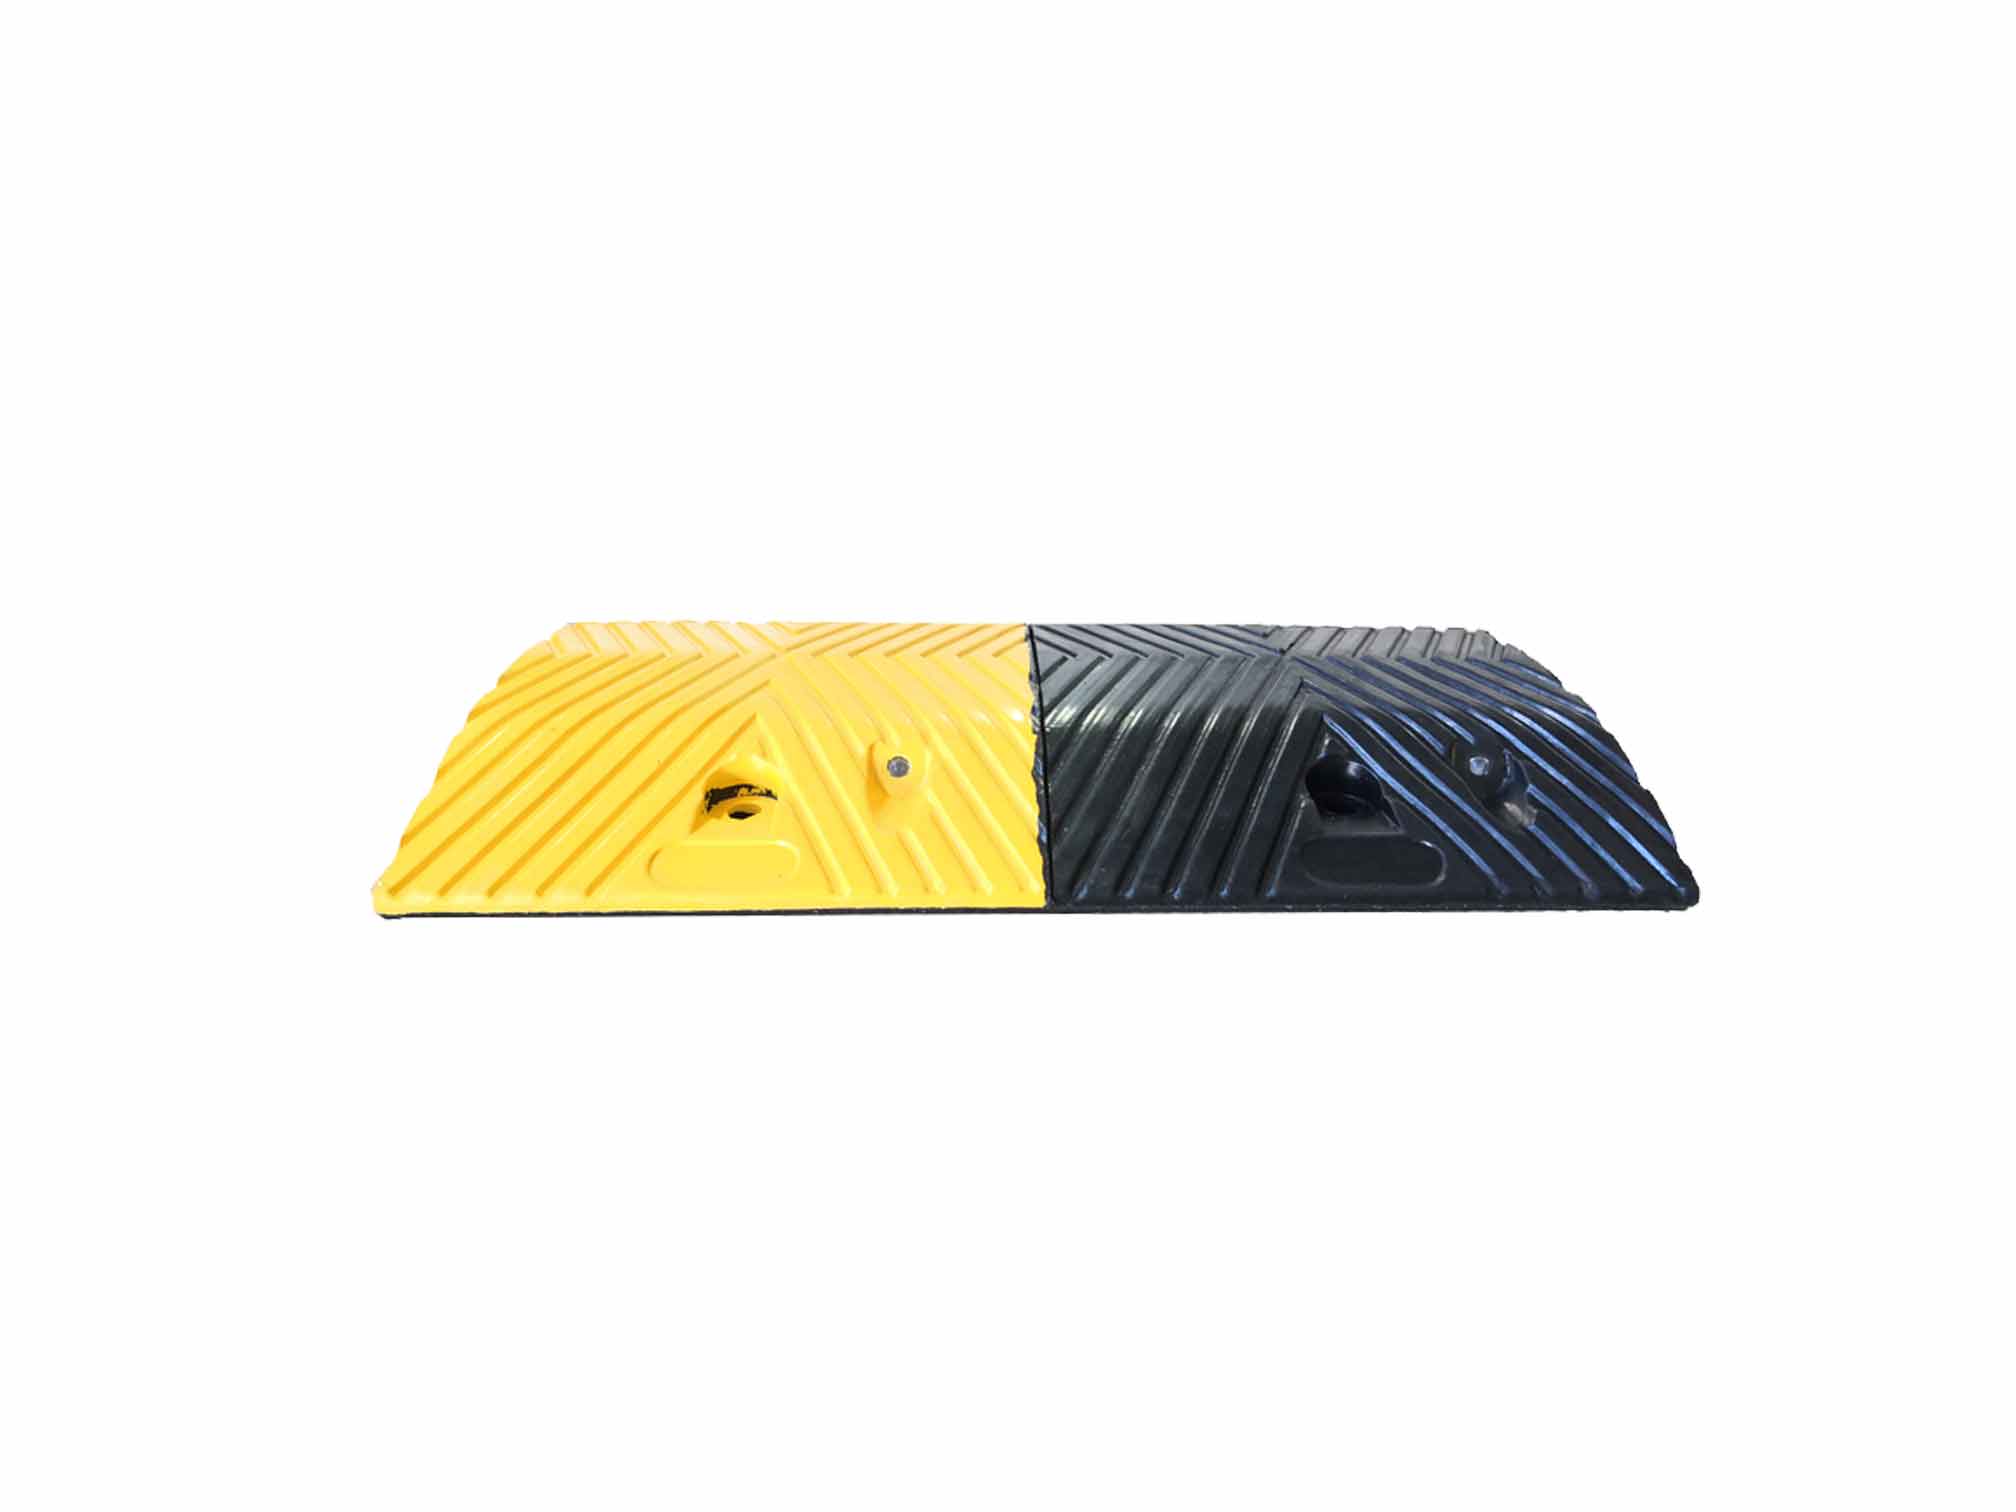 Modello DH - Rallentatori stradali in gomma nera e strisce gialle rifrangenti - DOSSI